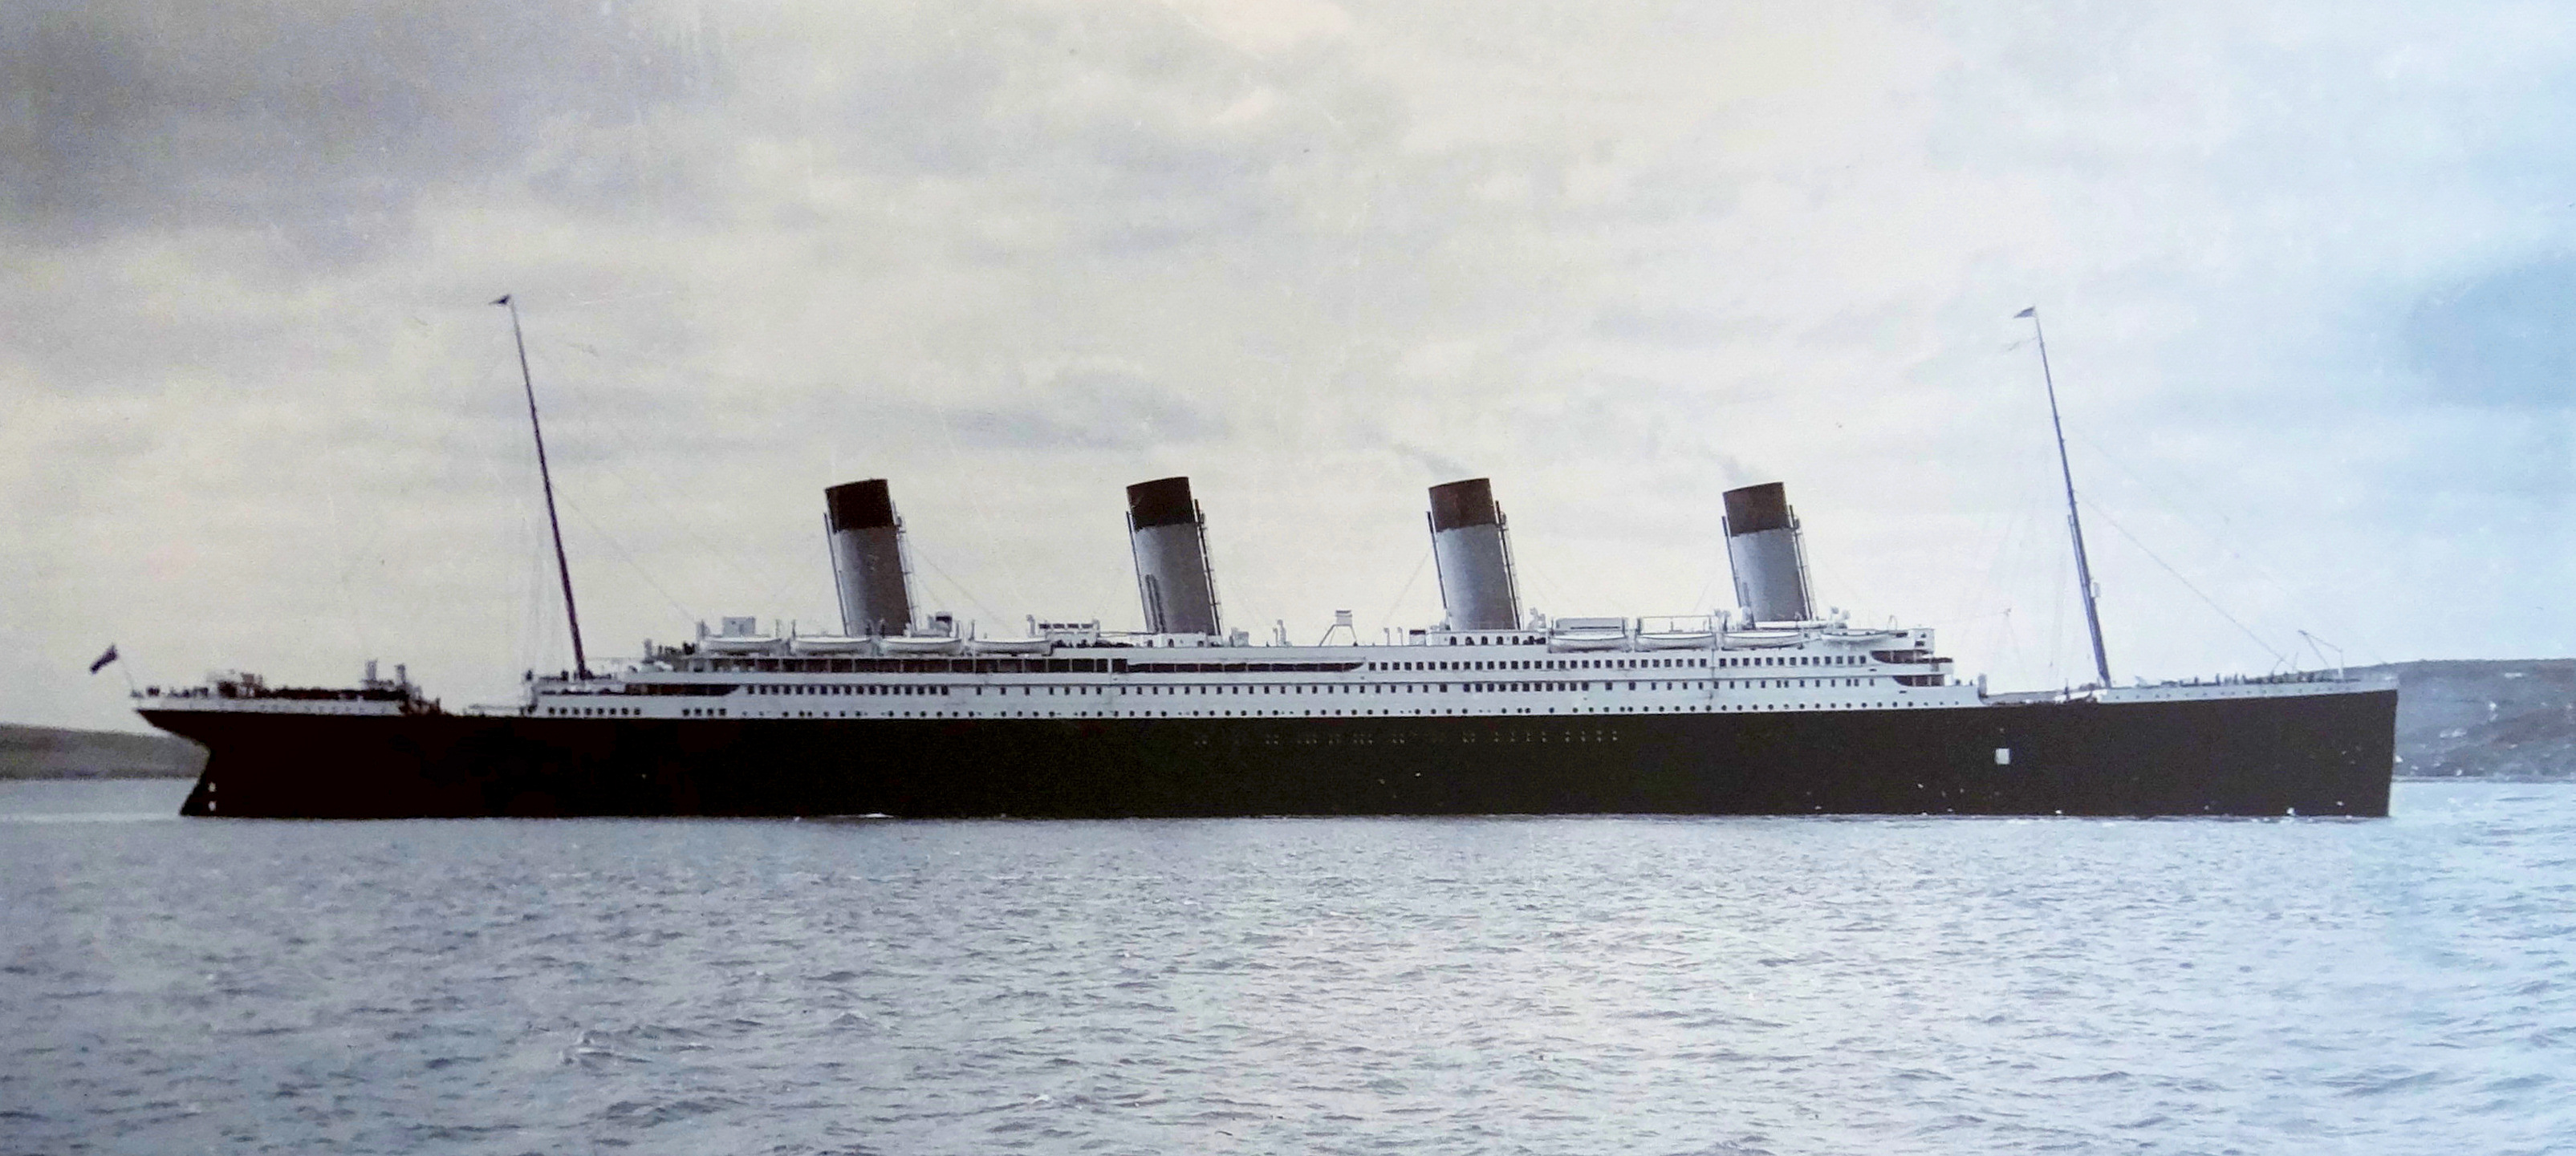 1912. godine - Prvi i posljednji put je iz Southamptona isplovio Titanic. Odredište je bio New York, no Titanic tamo nikada nije pristao. Samo četiri dana kasnije, oko 600 kilometara od  Newfoundlanda, oko 23:40 sati brod je udario u ledenjak. Manje od tri sata kasnije, prepolovio se i potonuo. Poginulo je više od 1500 ljudi, što Titanicovu nesreću čini jednom od najgorih komercijalnih pomorskih katastrofa u novijoj povijesti. 